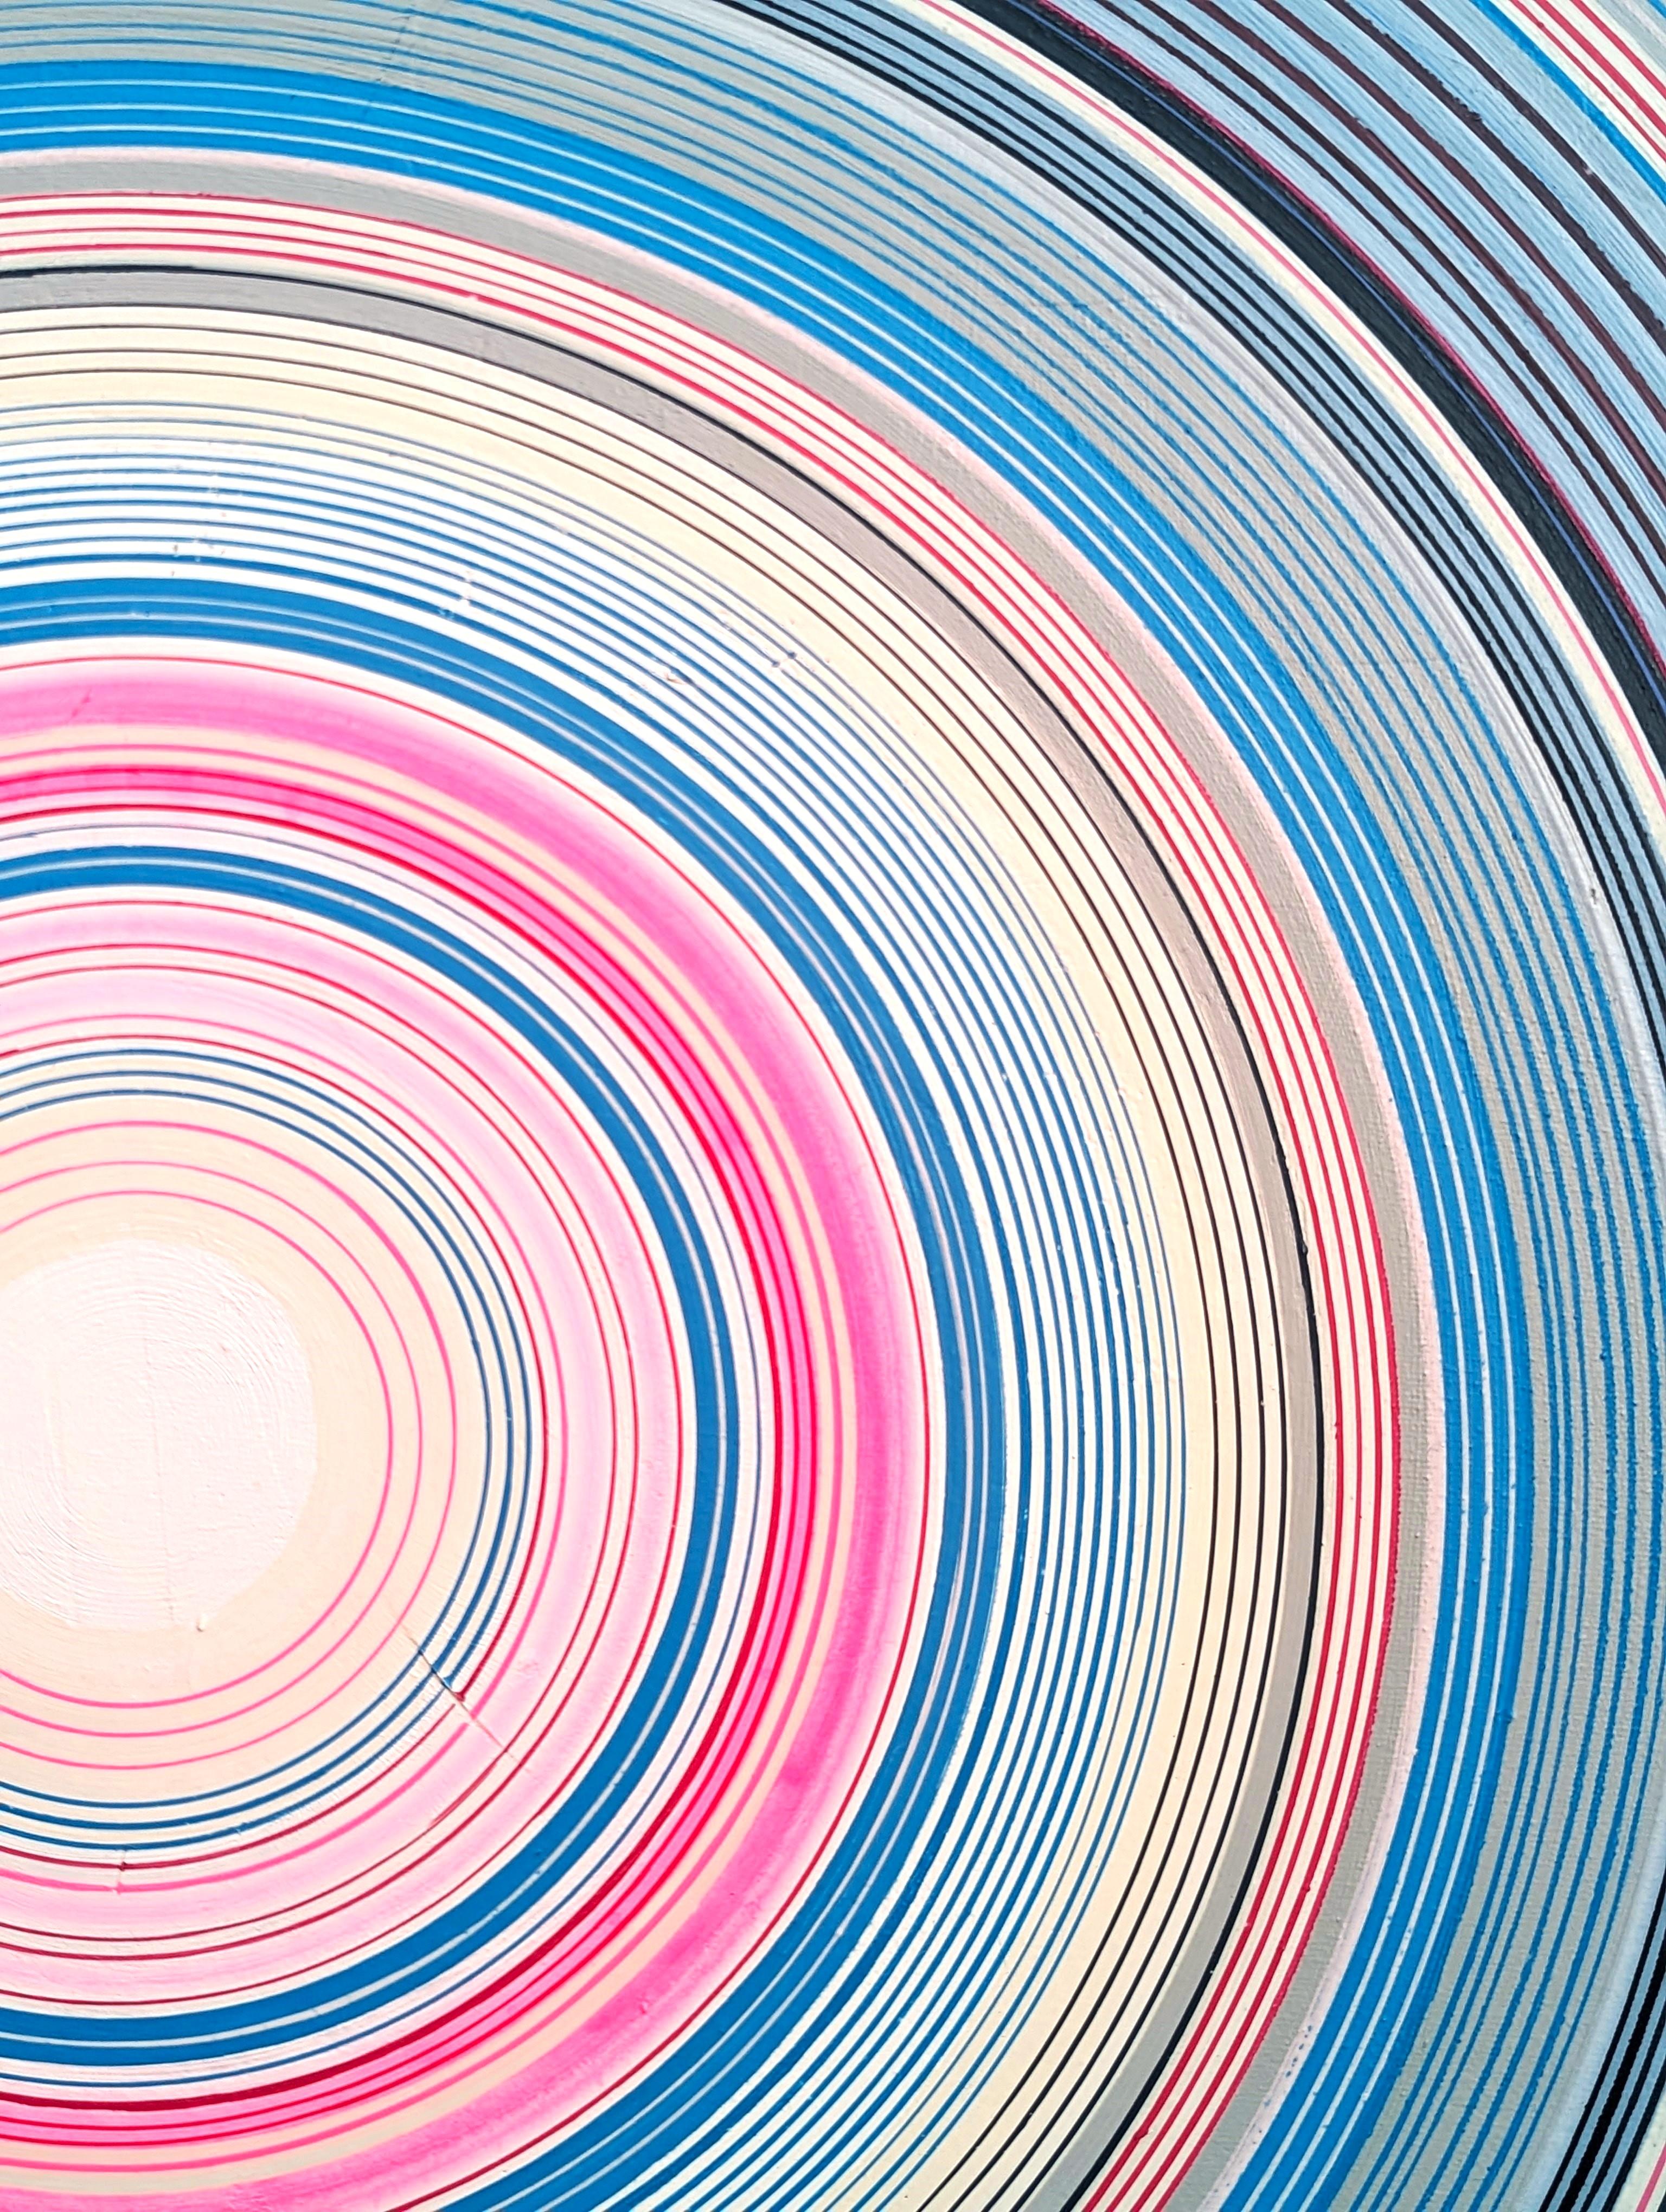 Blaues, rosafarbenes und weißes abstraktes zeitgenössisches Rundgemälde des Künstlers David Hardaker aus Houston, TX. Rückseitig vom Künstler signiert, betitelt und datiert. 

Erklärung des Künstlers: Das Werk ist eine Antwort auf Musik.

Das